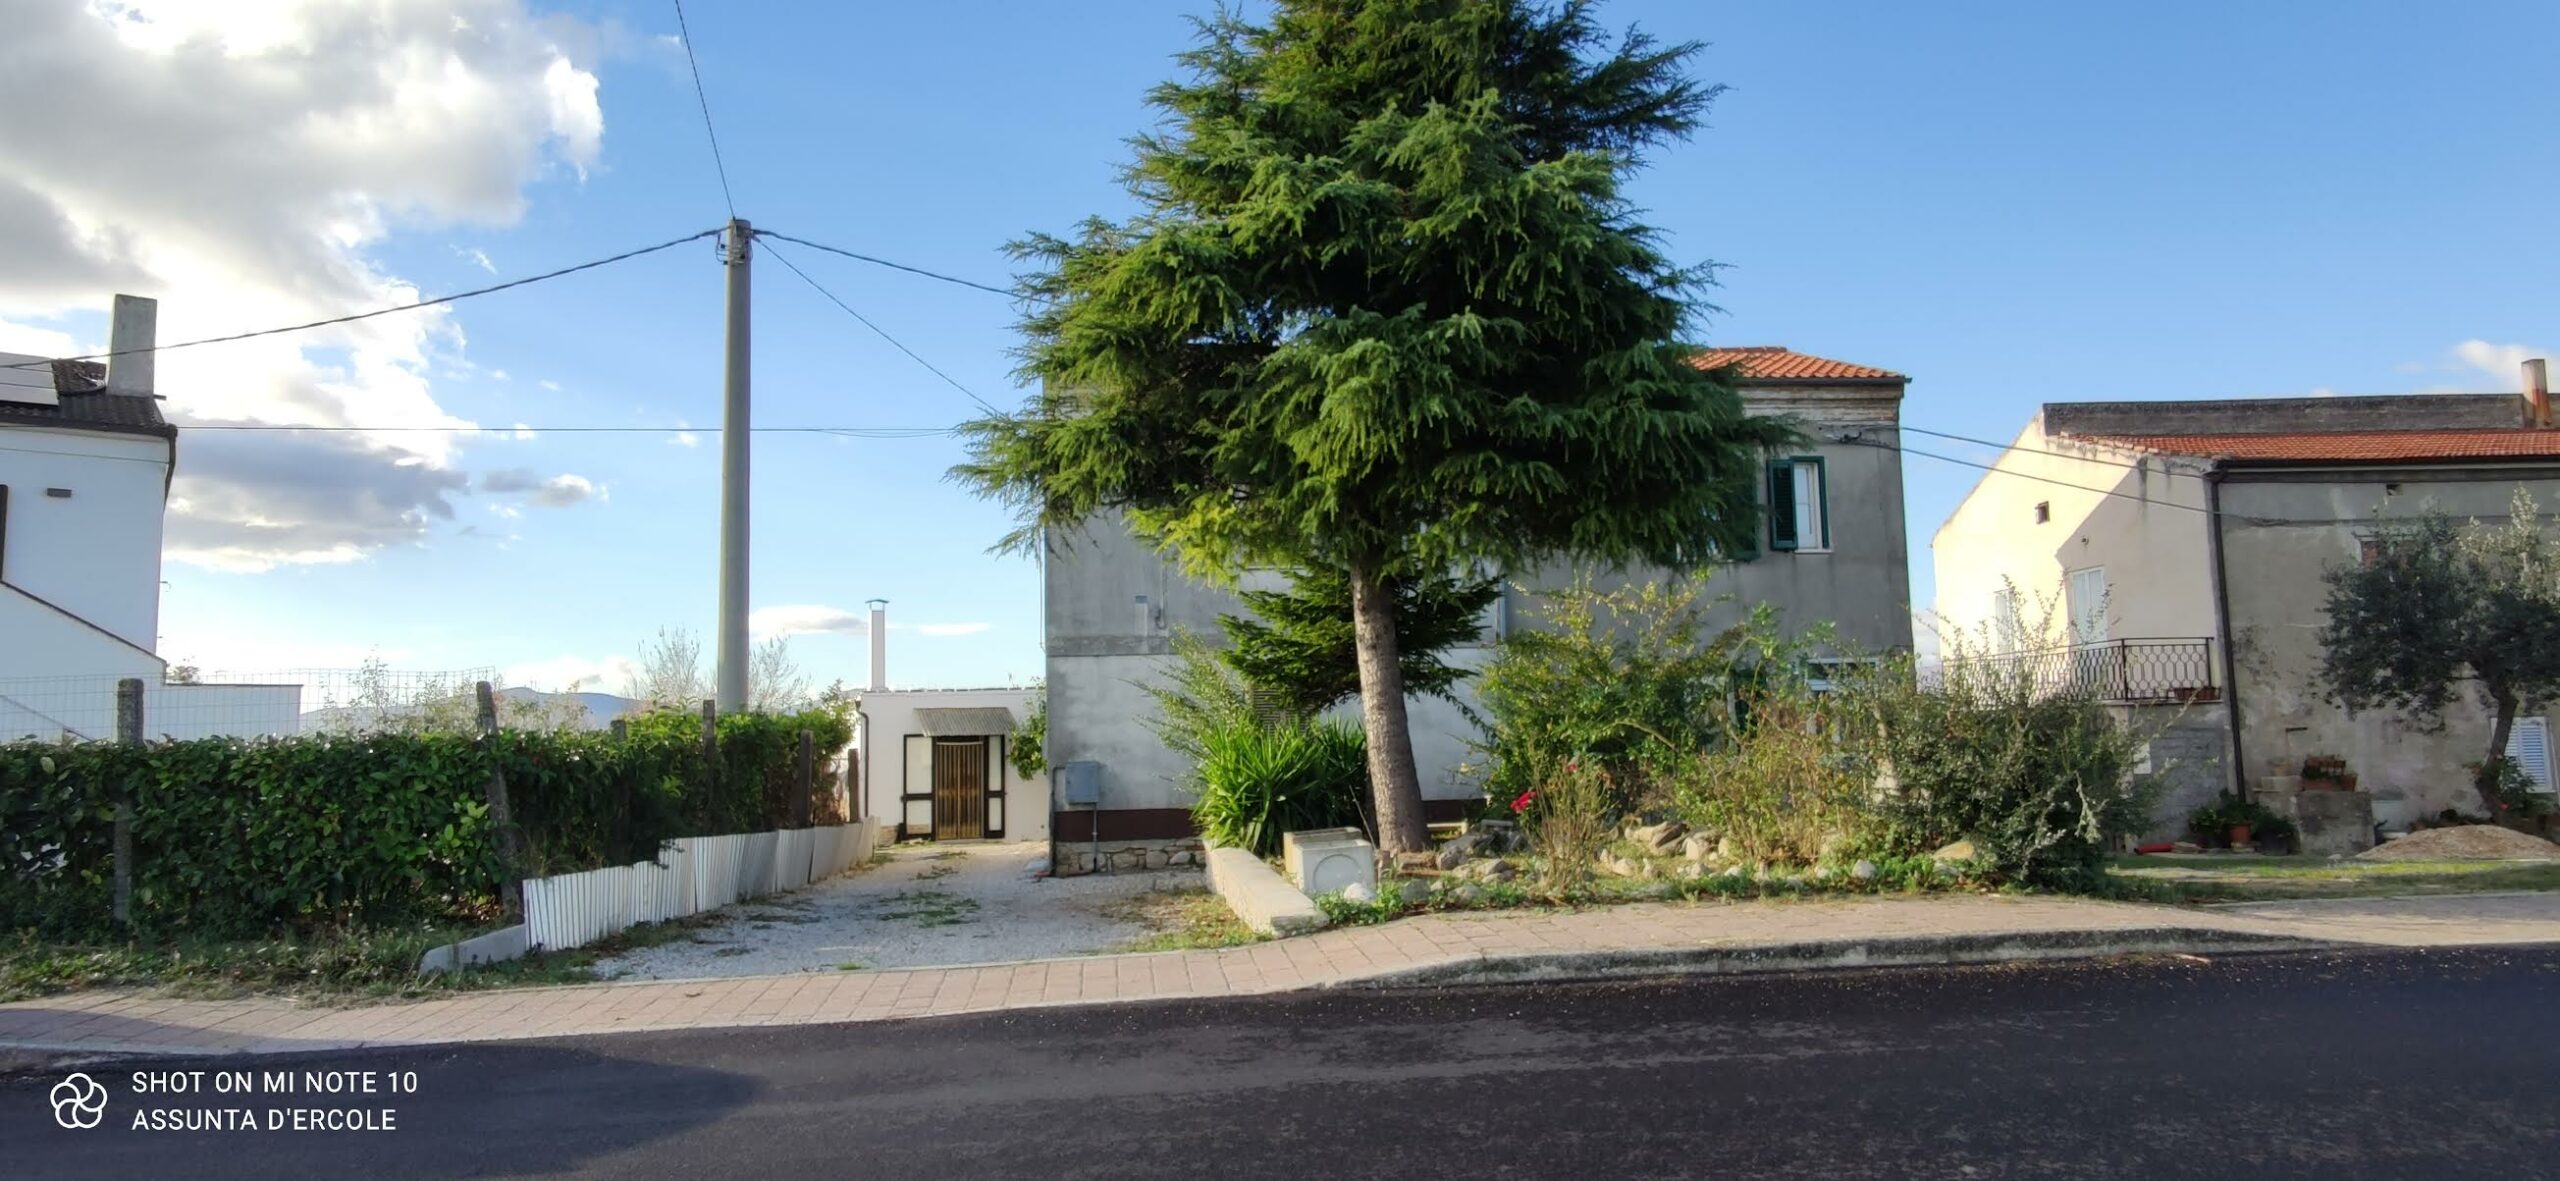 Rif 1450 Scerni (CH) – Abitazione semindipendente con terreno – € 100000